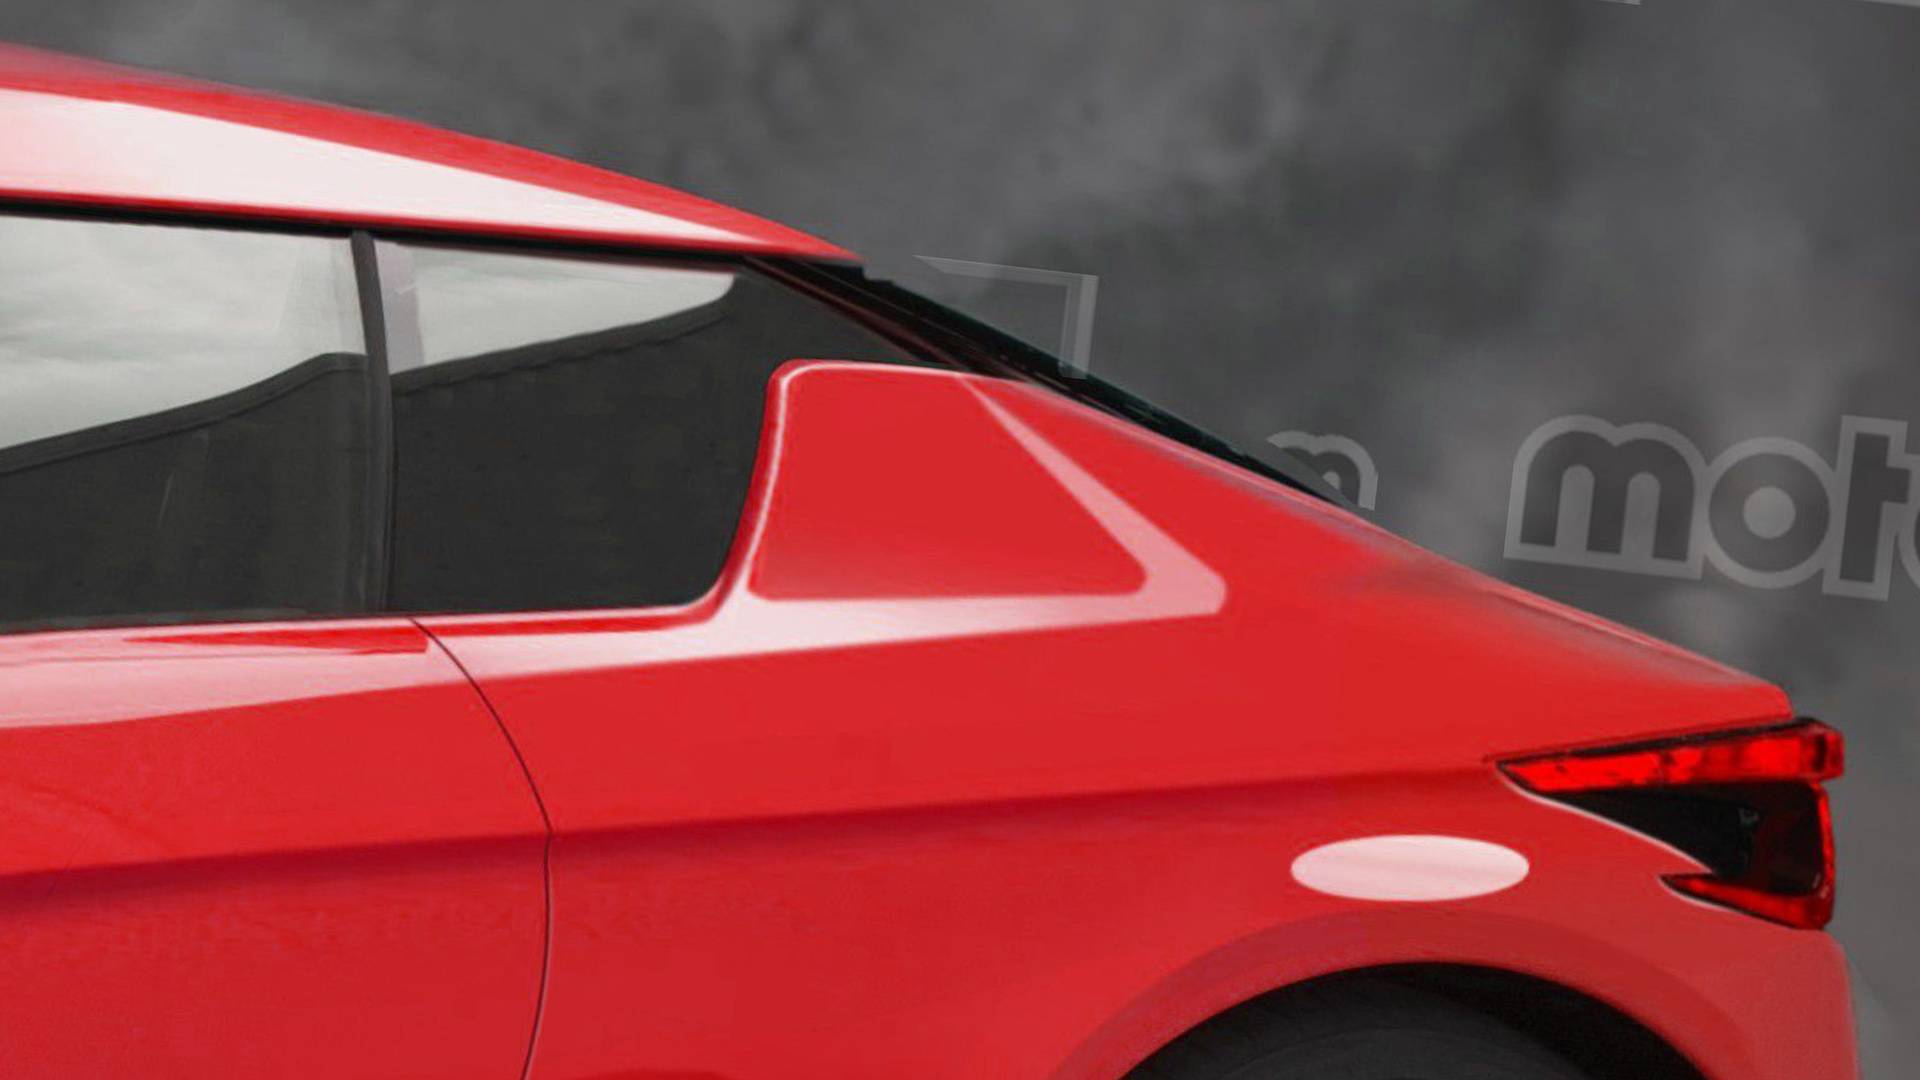 نيسان 370Z القادمة 2020 تظهر بتصميم جديد كليا في صور افتراضية 16